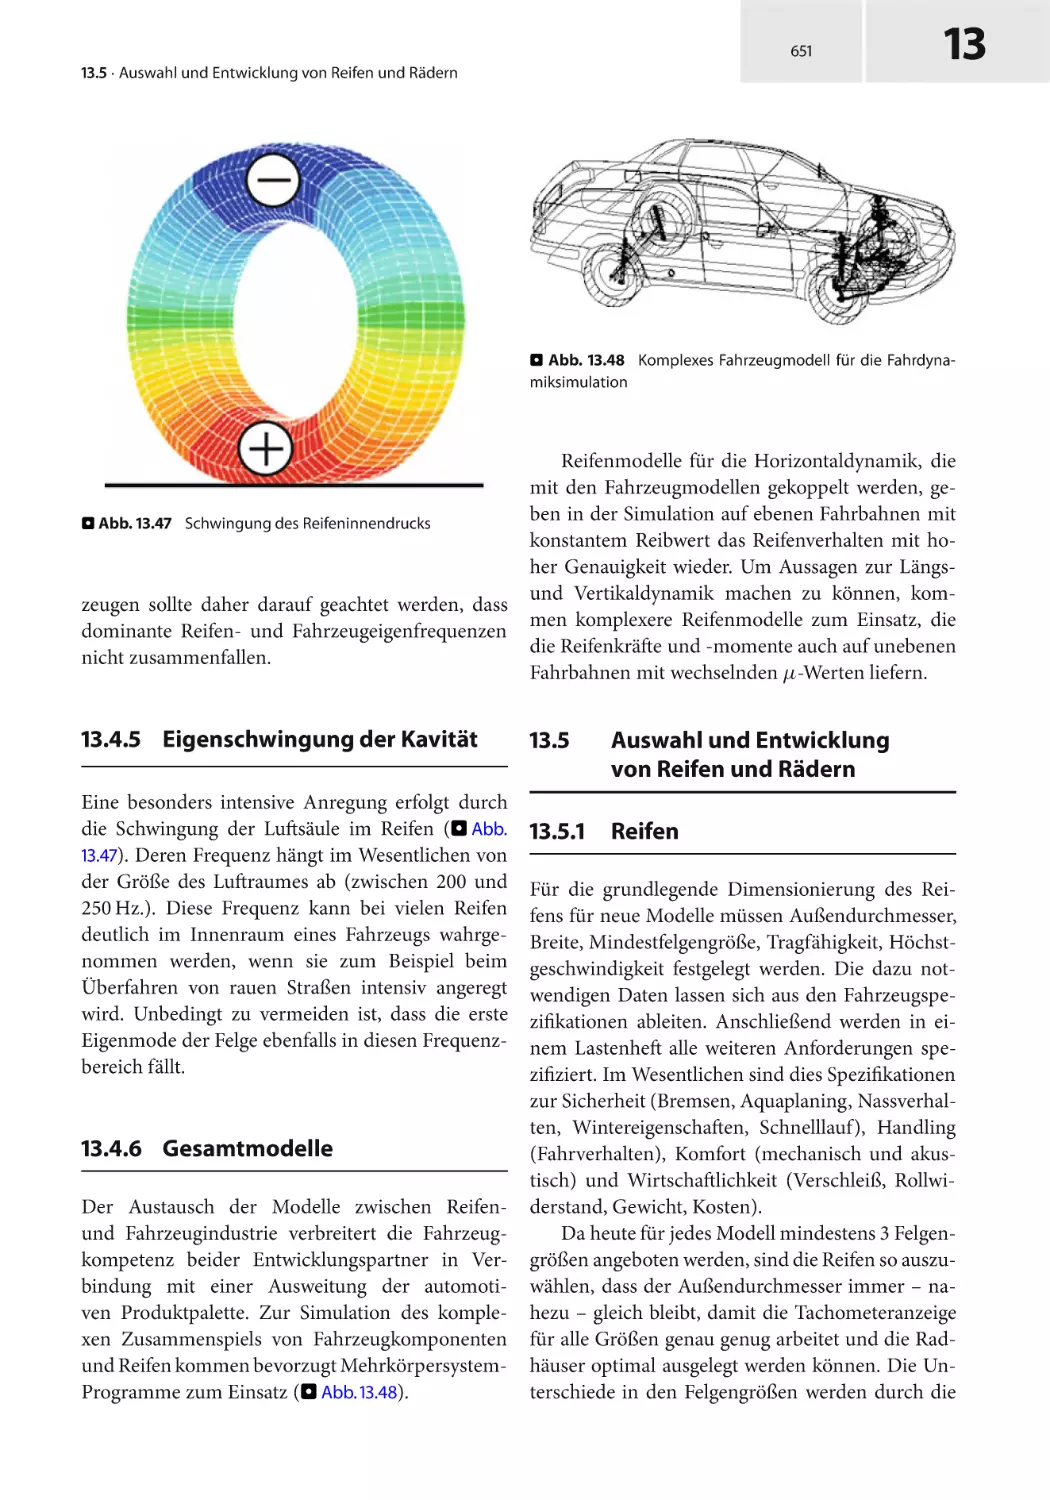 13.5 Auswahl und Entwicklung von Reifen und Rädern